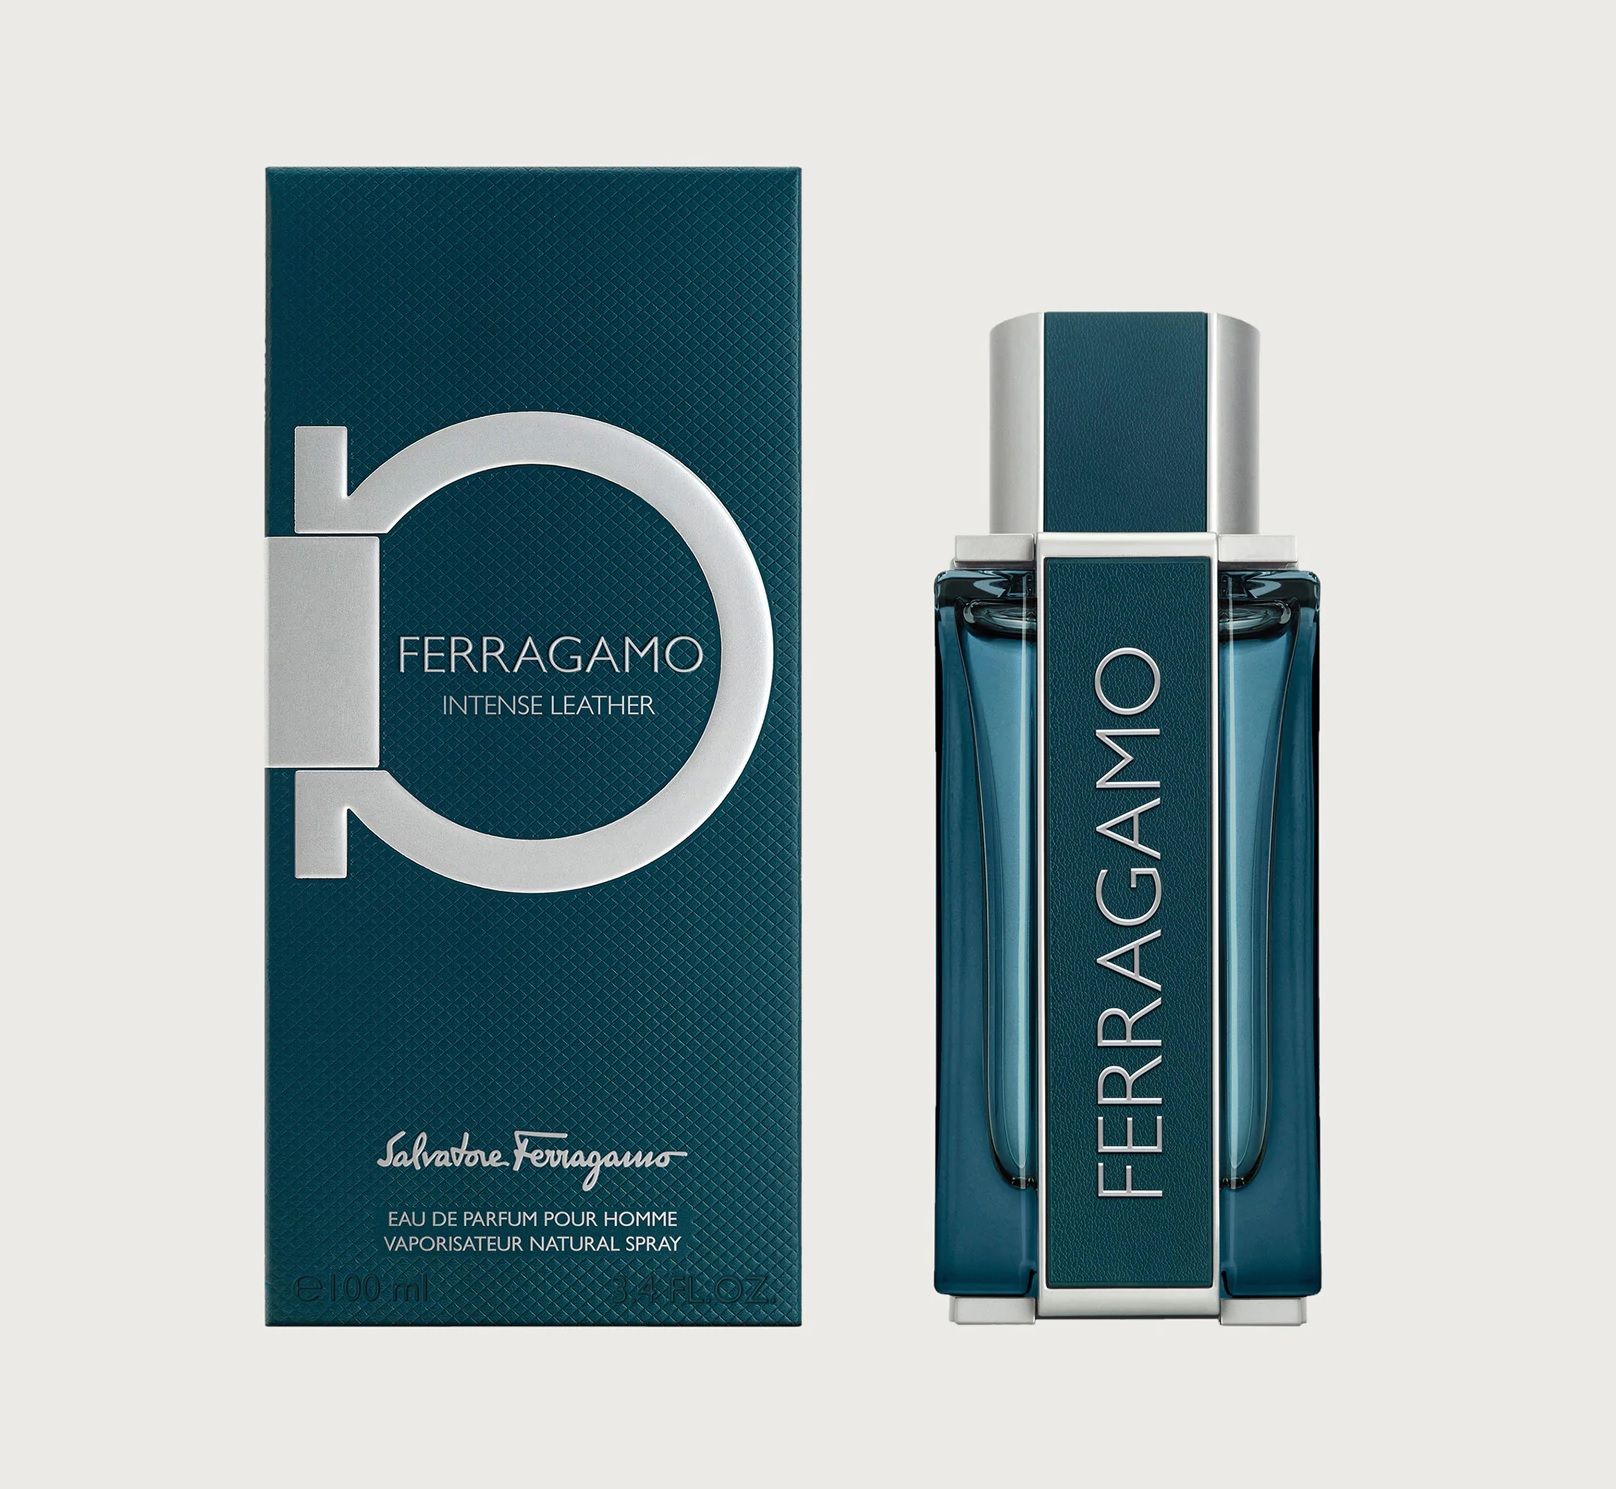 Ferragamo Intense Leather Salvatore Ferragamo cologne - a new fragrance